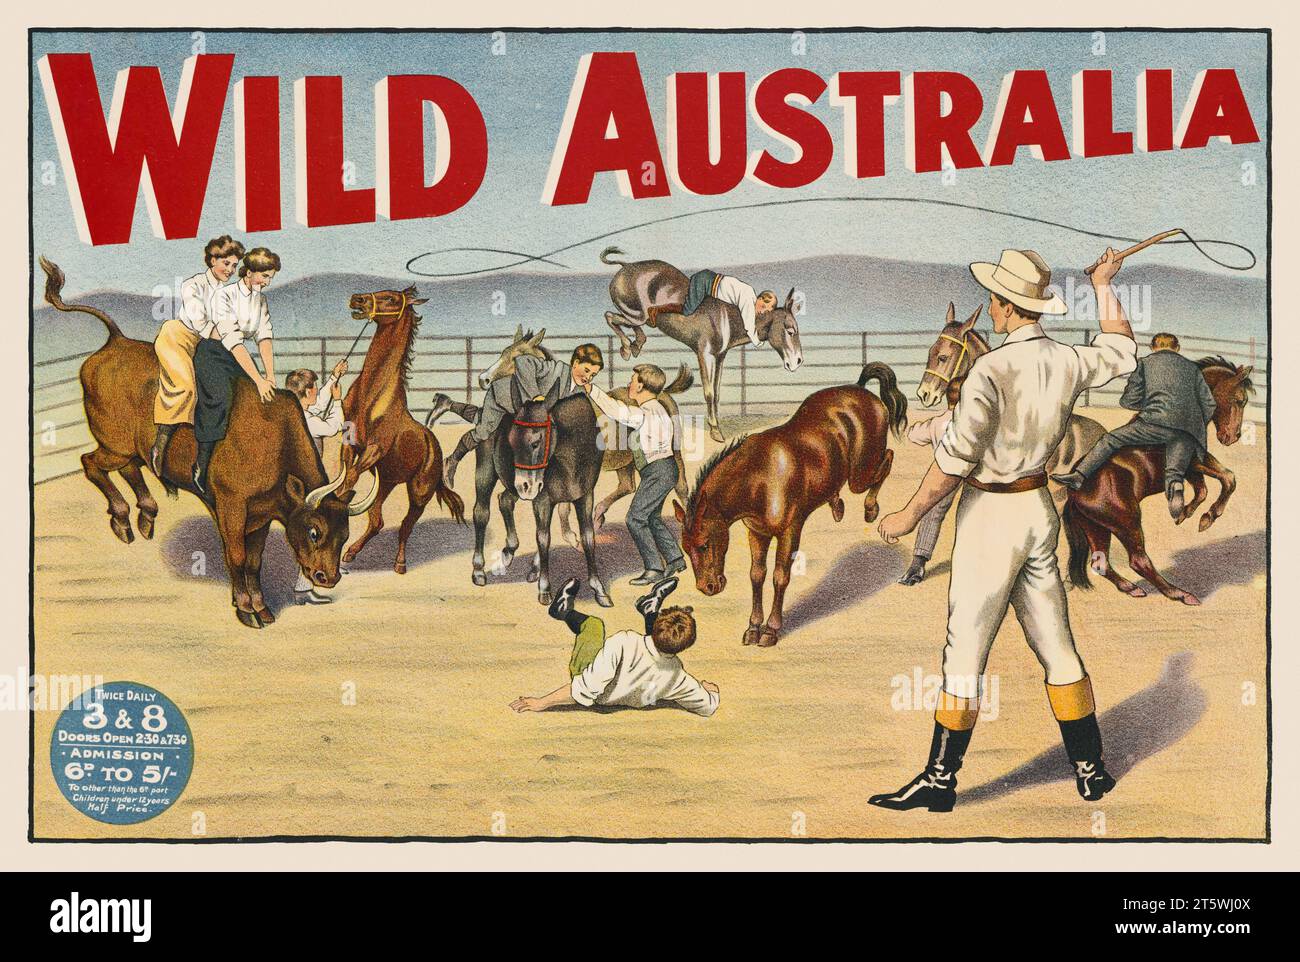 Australie sauvage. Artiste inconnu. Affiche publiée vers 1910. Banque D'Images